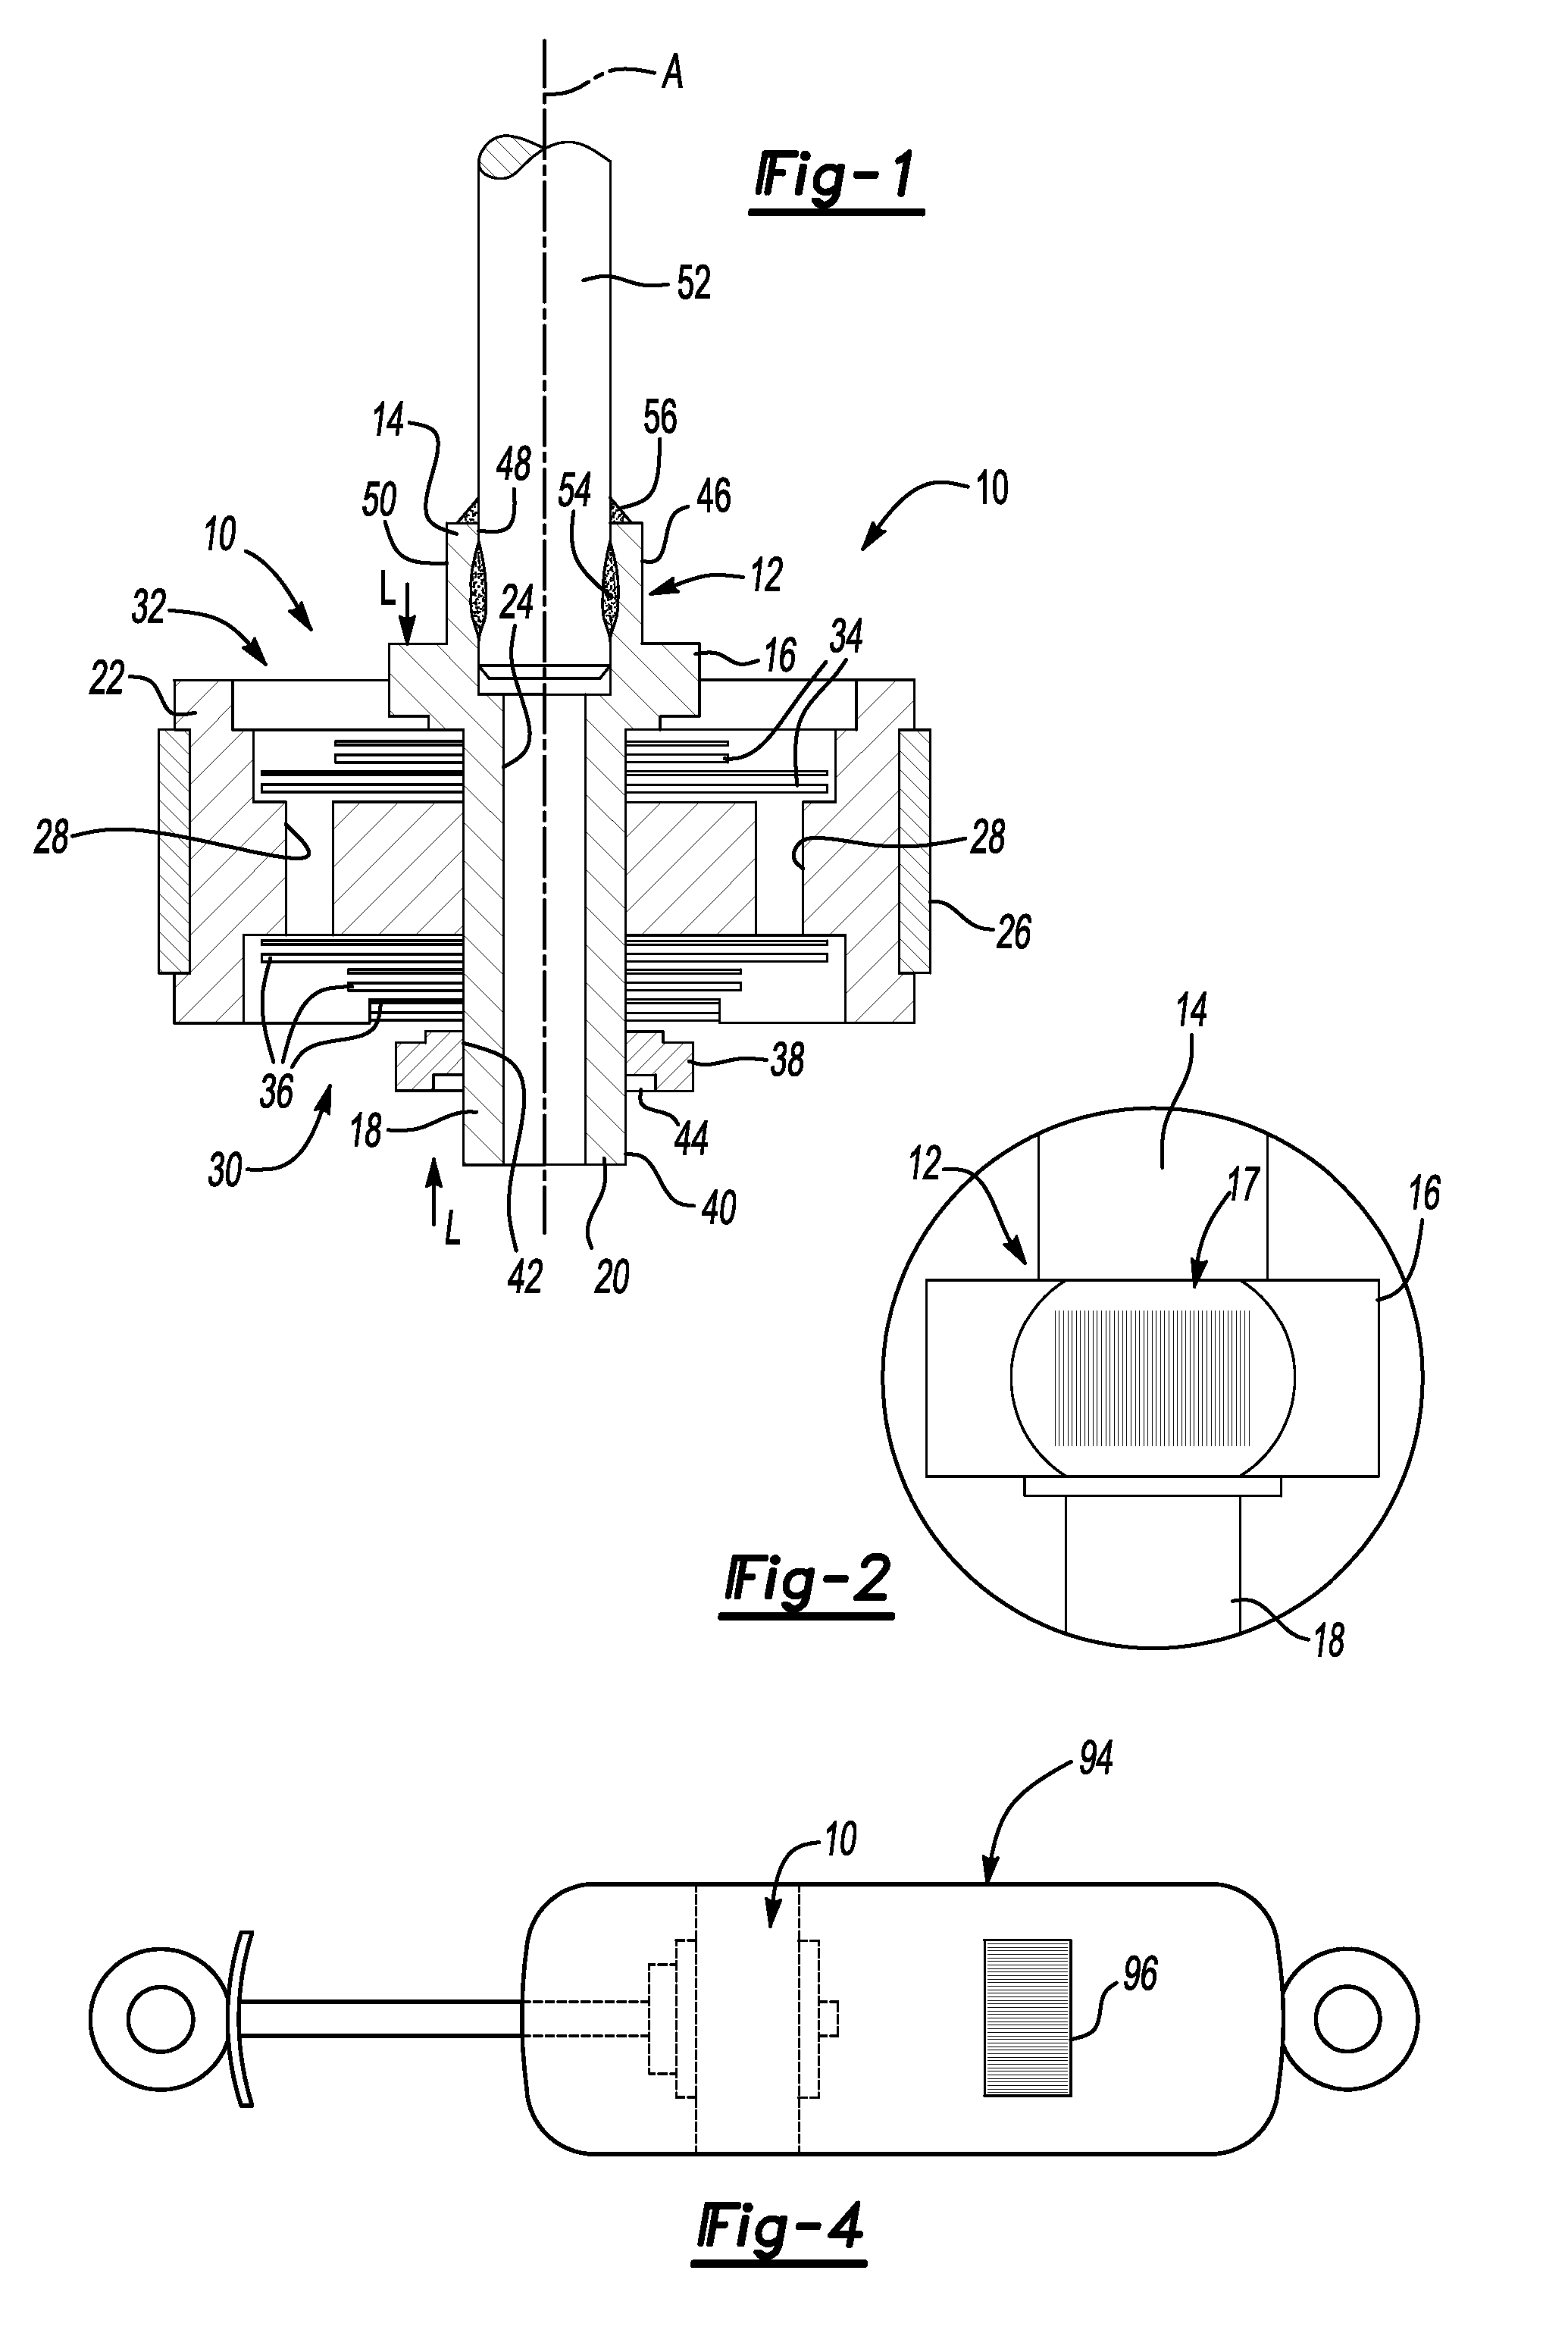 Method of manufacturing a modular damper